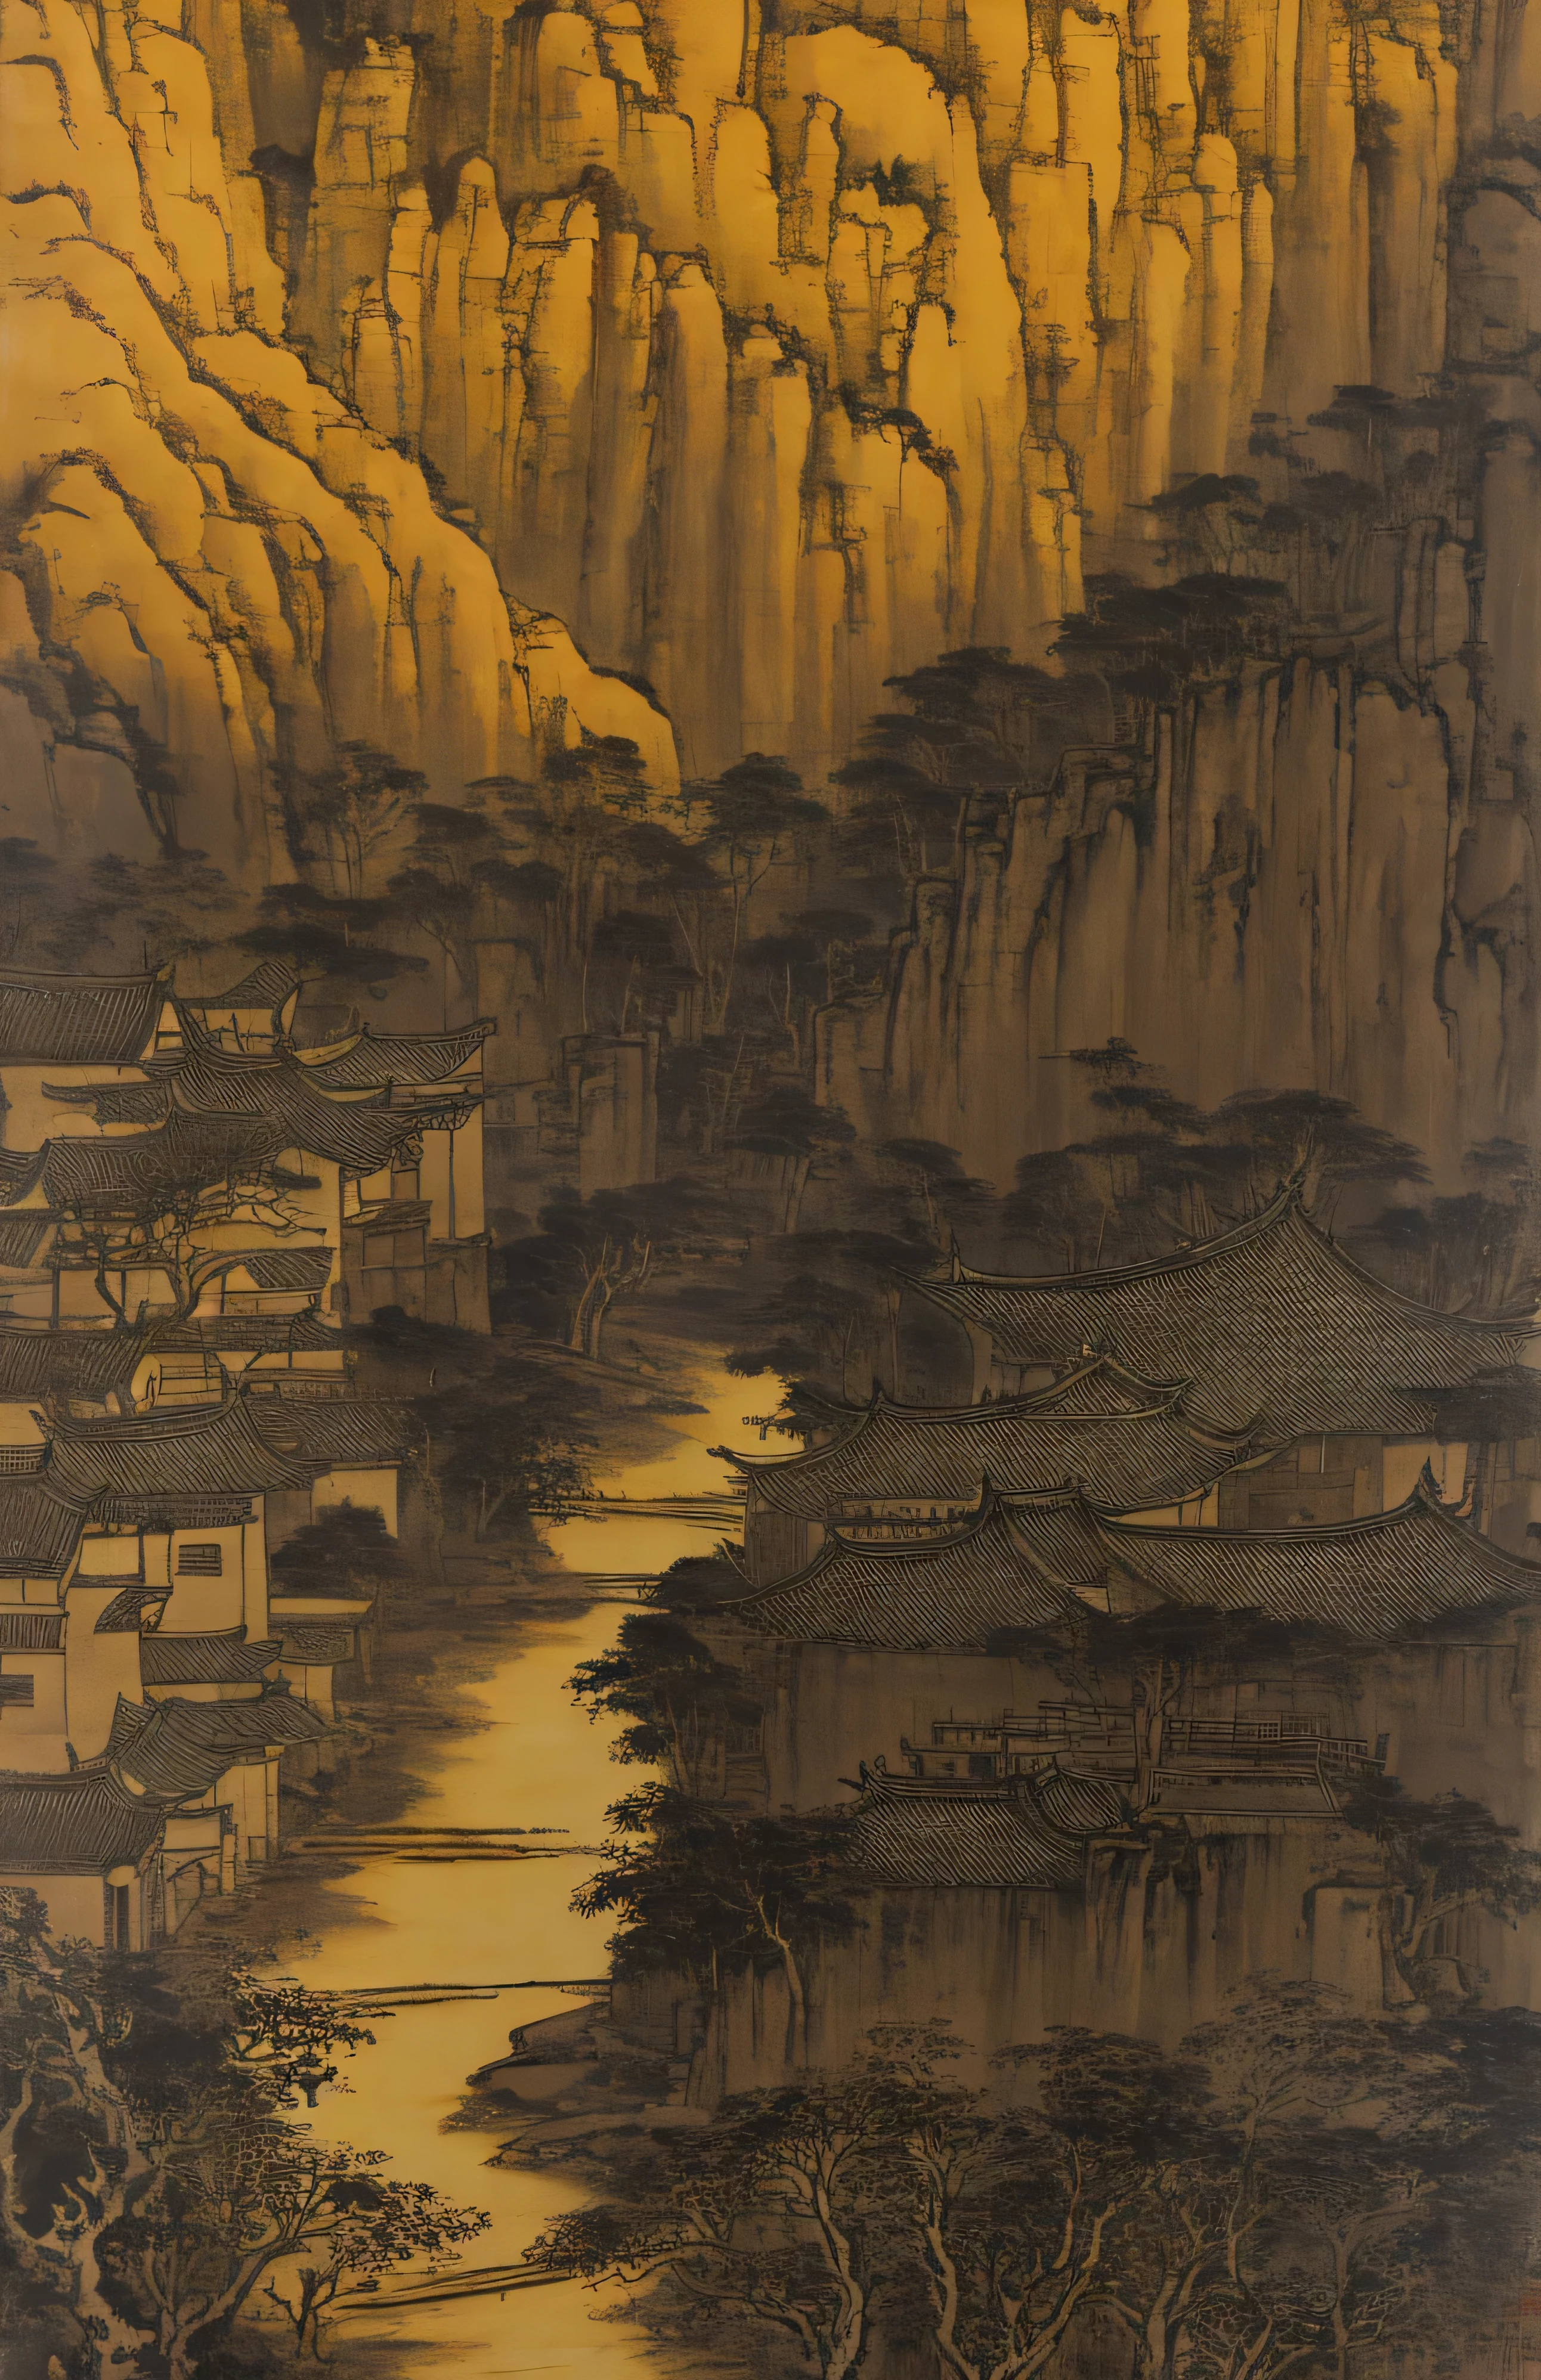 Pequeño pueblo con vistas al arroyo., El estilo está influenciado por el arte chino antiguo, amarillo claro y negro claro, pintura china, Pintura en tinta, Bada Shanren, Xu Wei, shi tao, arquitectura organica, senderismo, naturalismo terroso